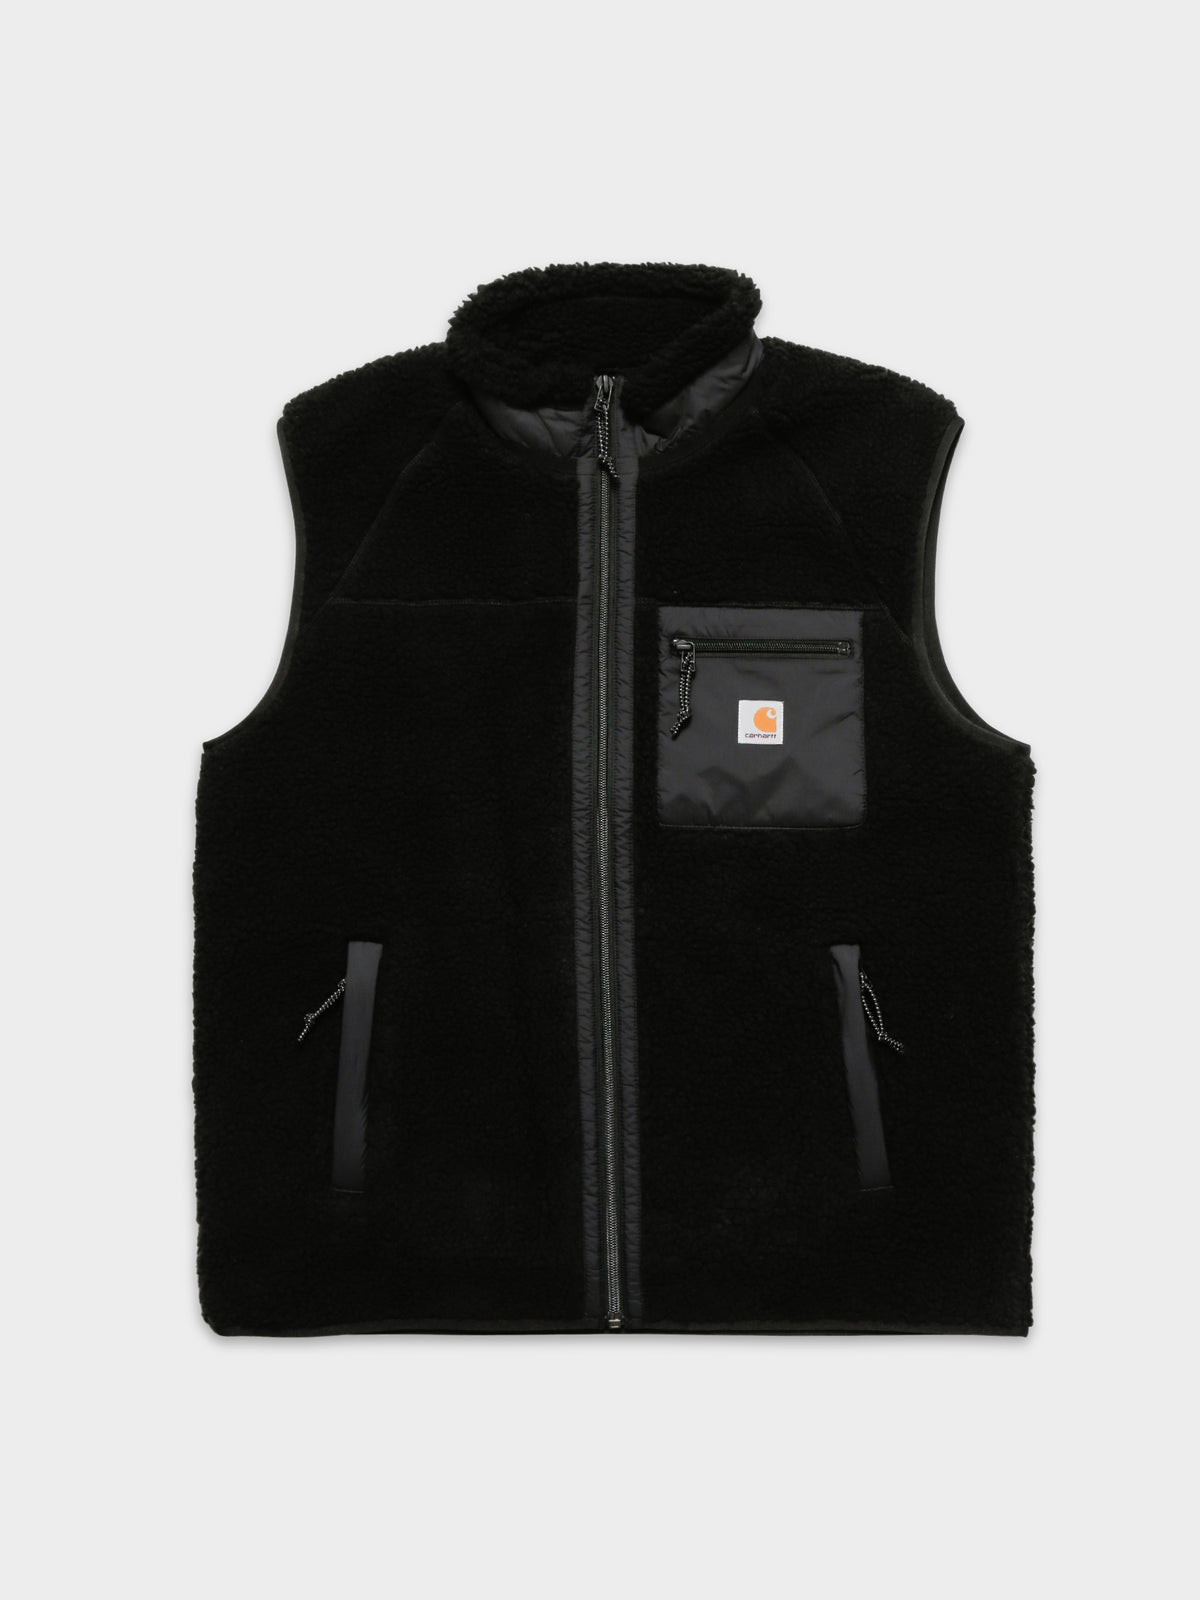 Prentis Liner Vest in Black